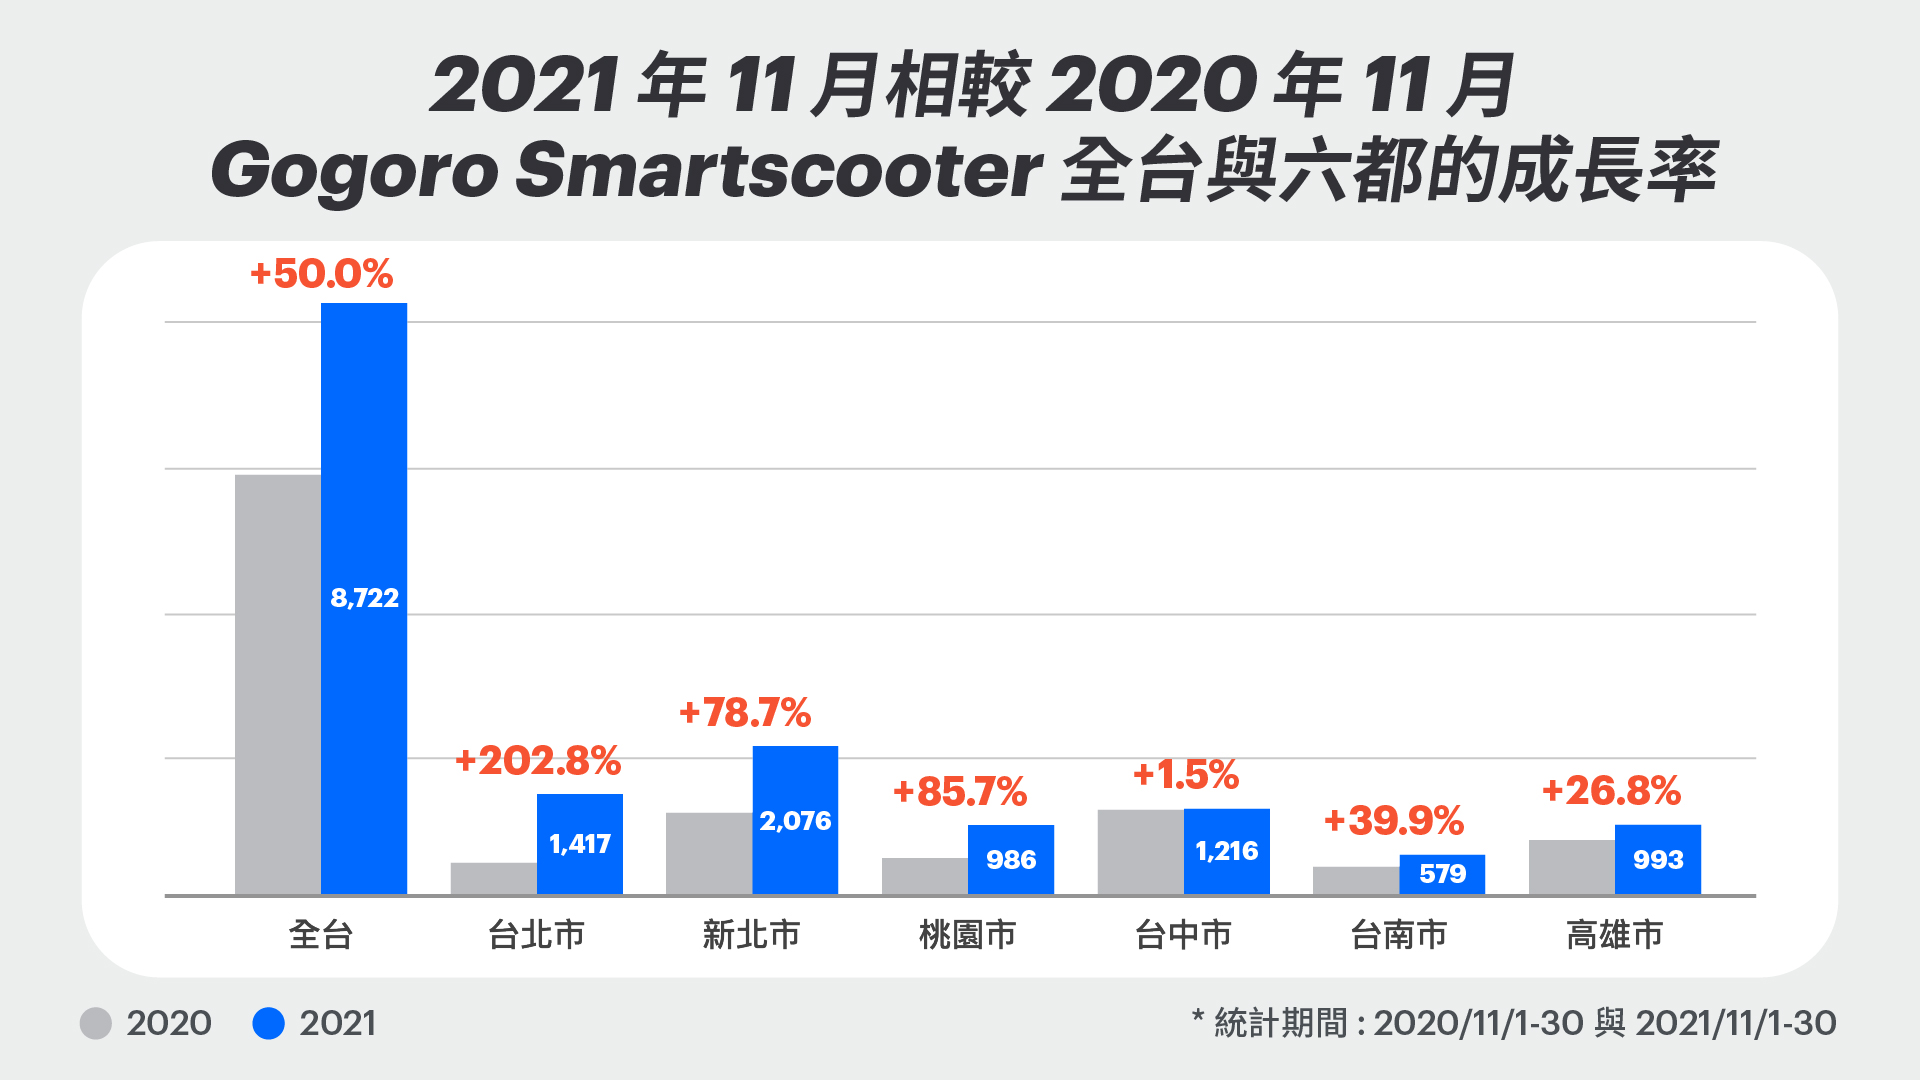 2021 年 11 月相較 2020 年 11 月 Gogoro Smartscooter 全台與六都的成長率。